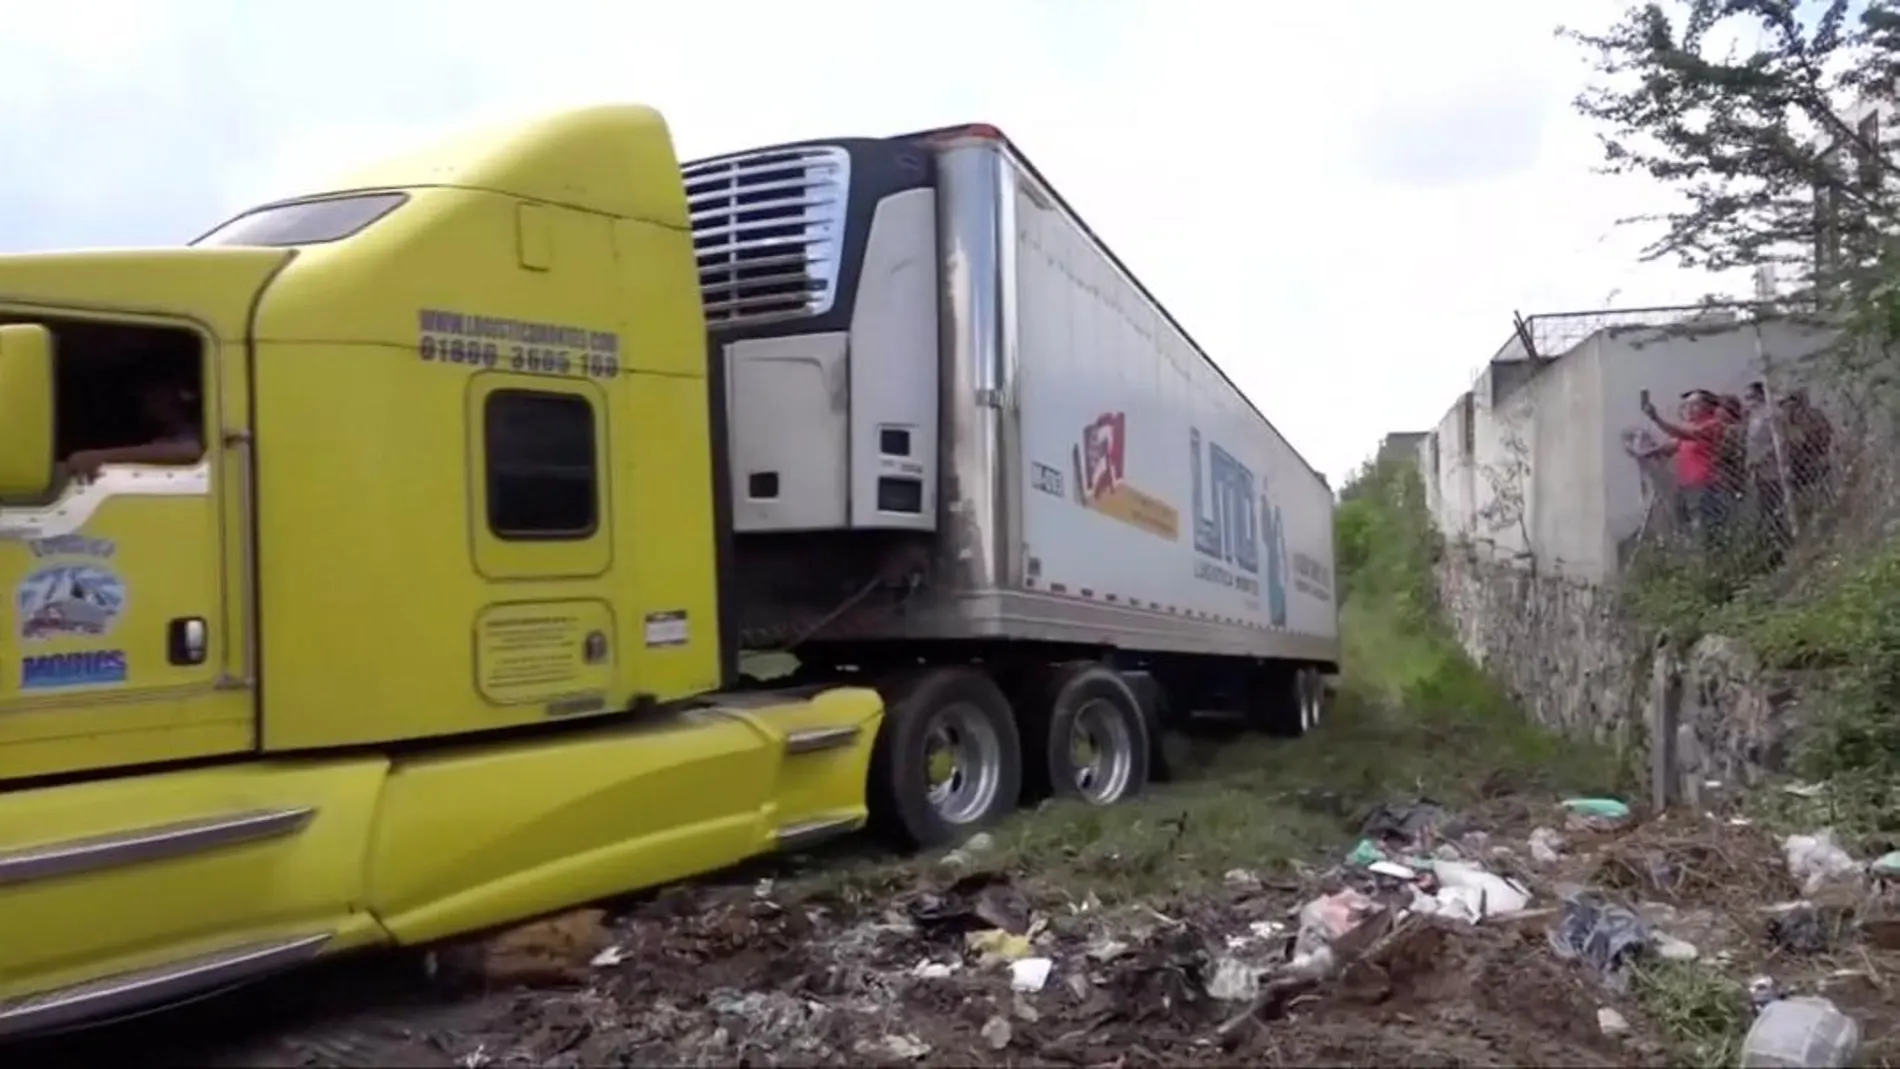 Uno de los camiones frigoríficos apareció en un descampado del municipio de Tlajomulco / Foto: Reuters